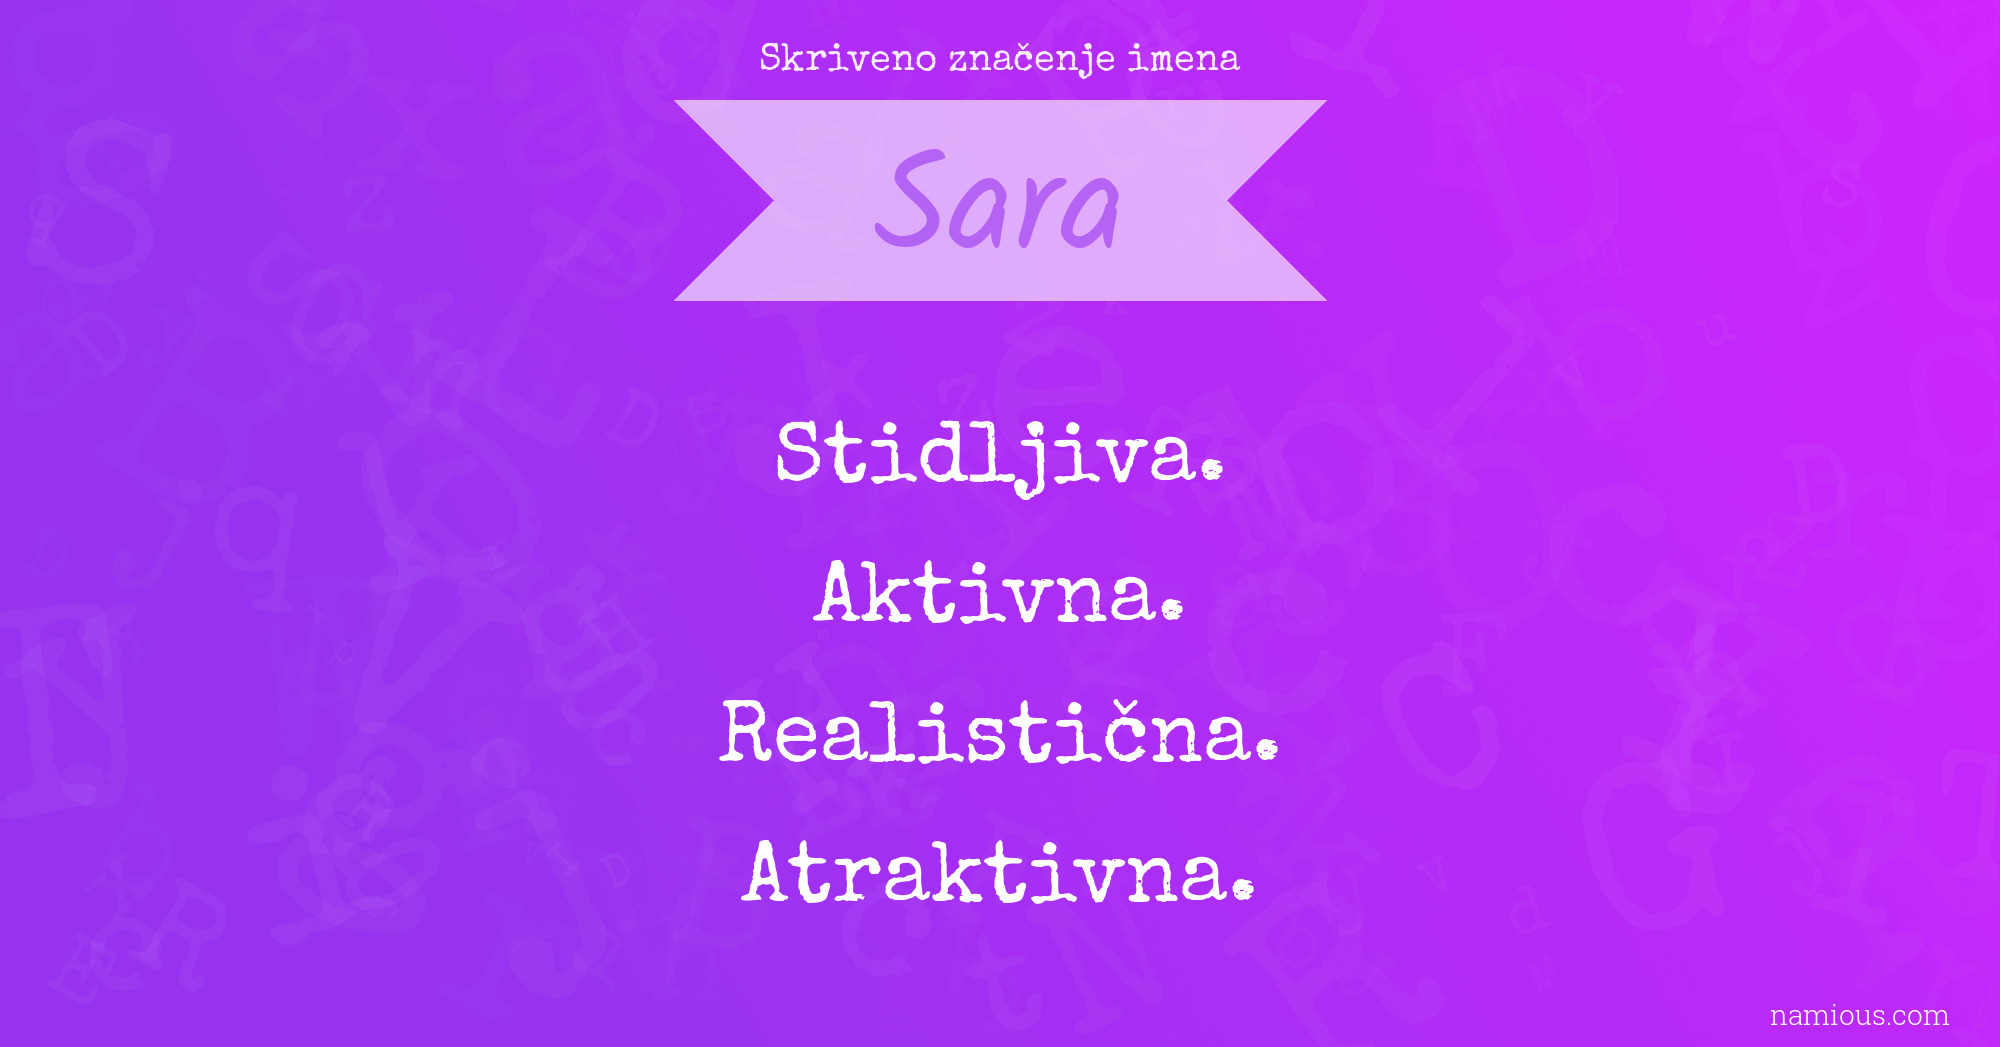 Skriveno značenje imena Sara